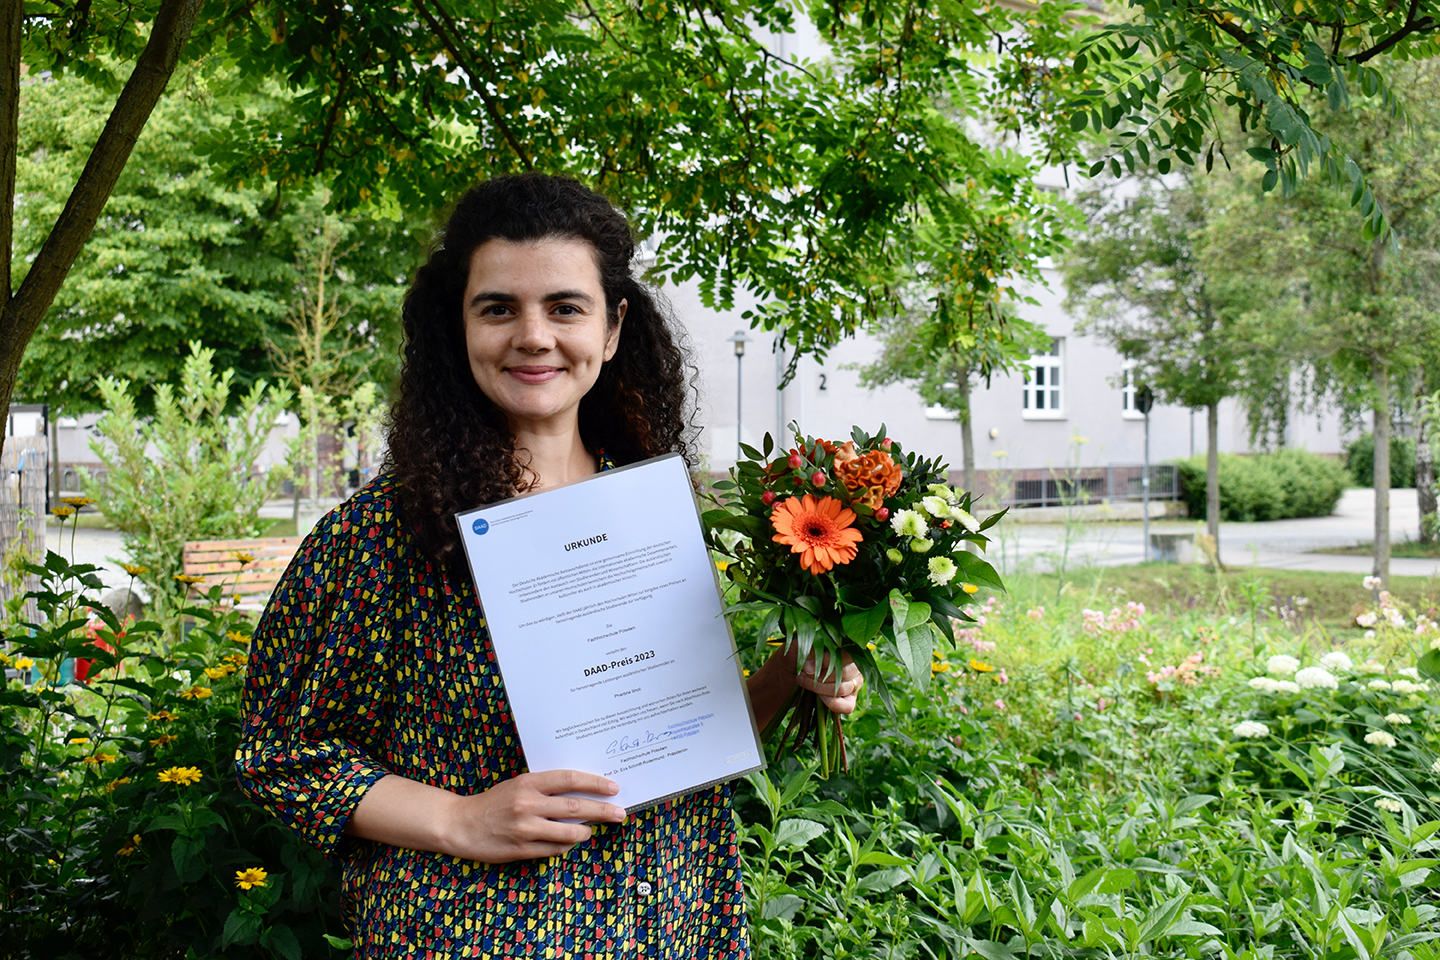 Die Preisträgerin des DAAD Presies, Phantina Sholi hält ihre Urkunde und ein Strauß Blumen hoch. Sie steht in einem grün bewachsenen Garten.